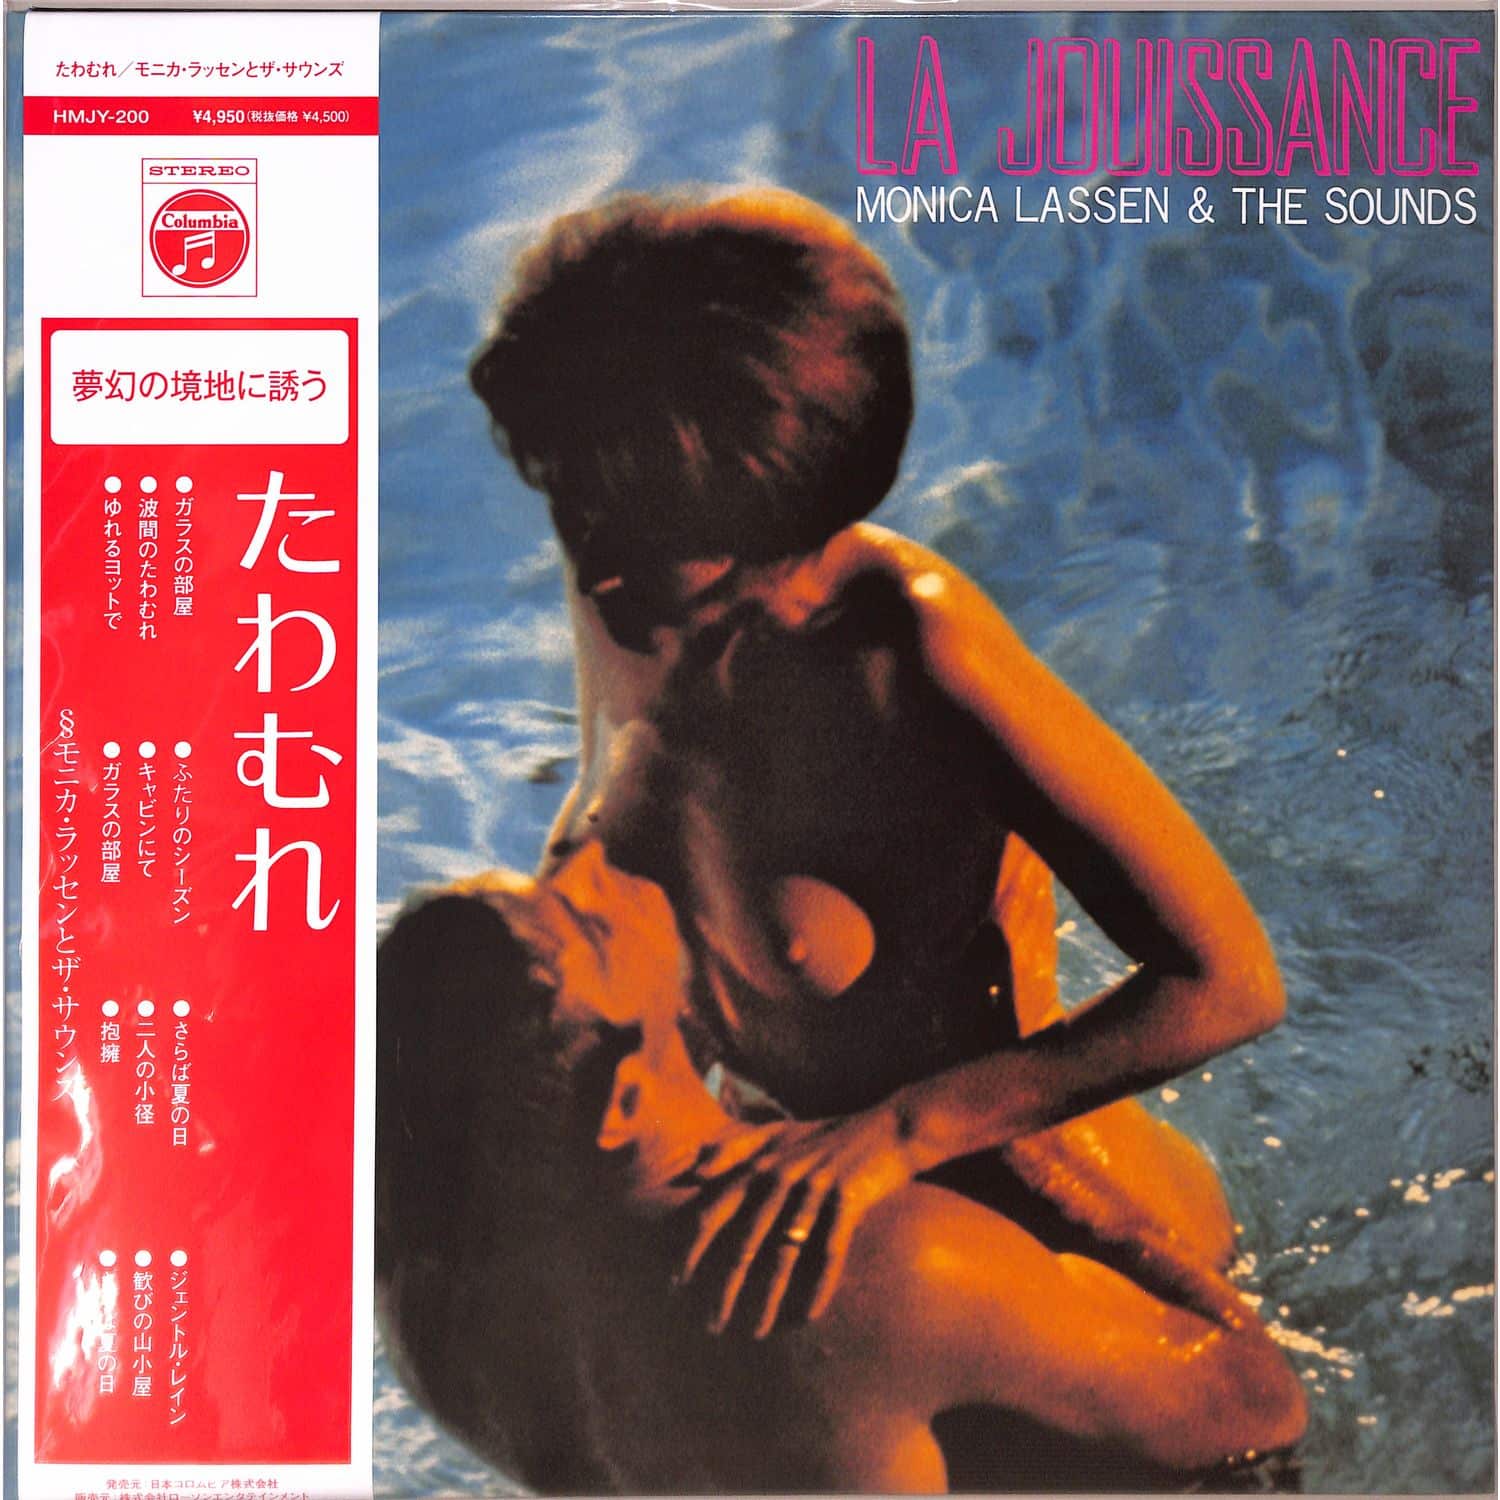 Monica Lassen & The Sounds - LA JOUISSANCE 